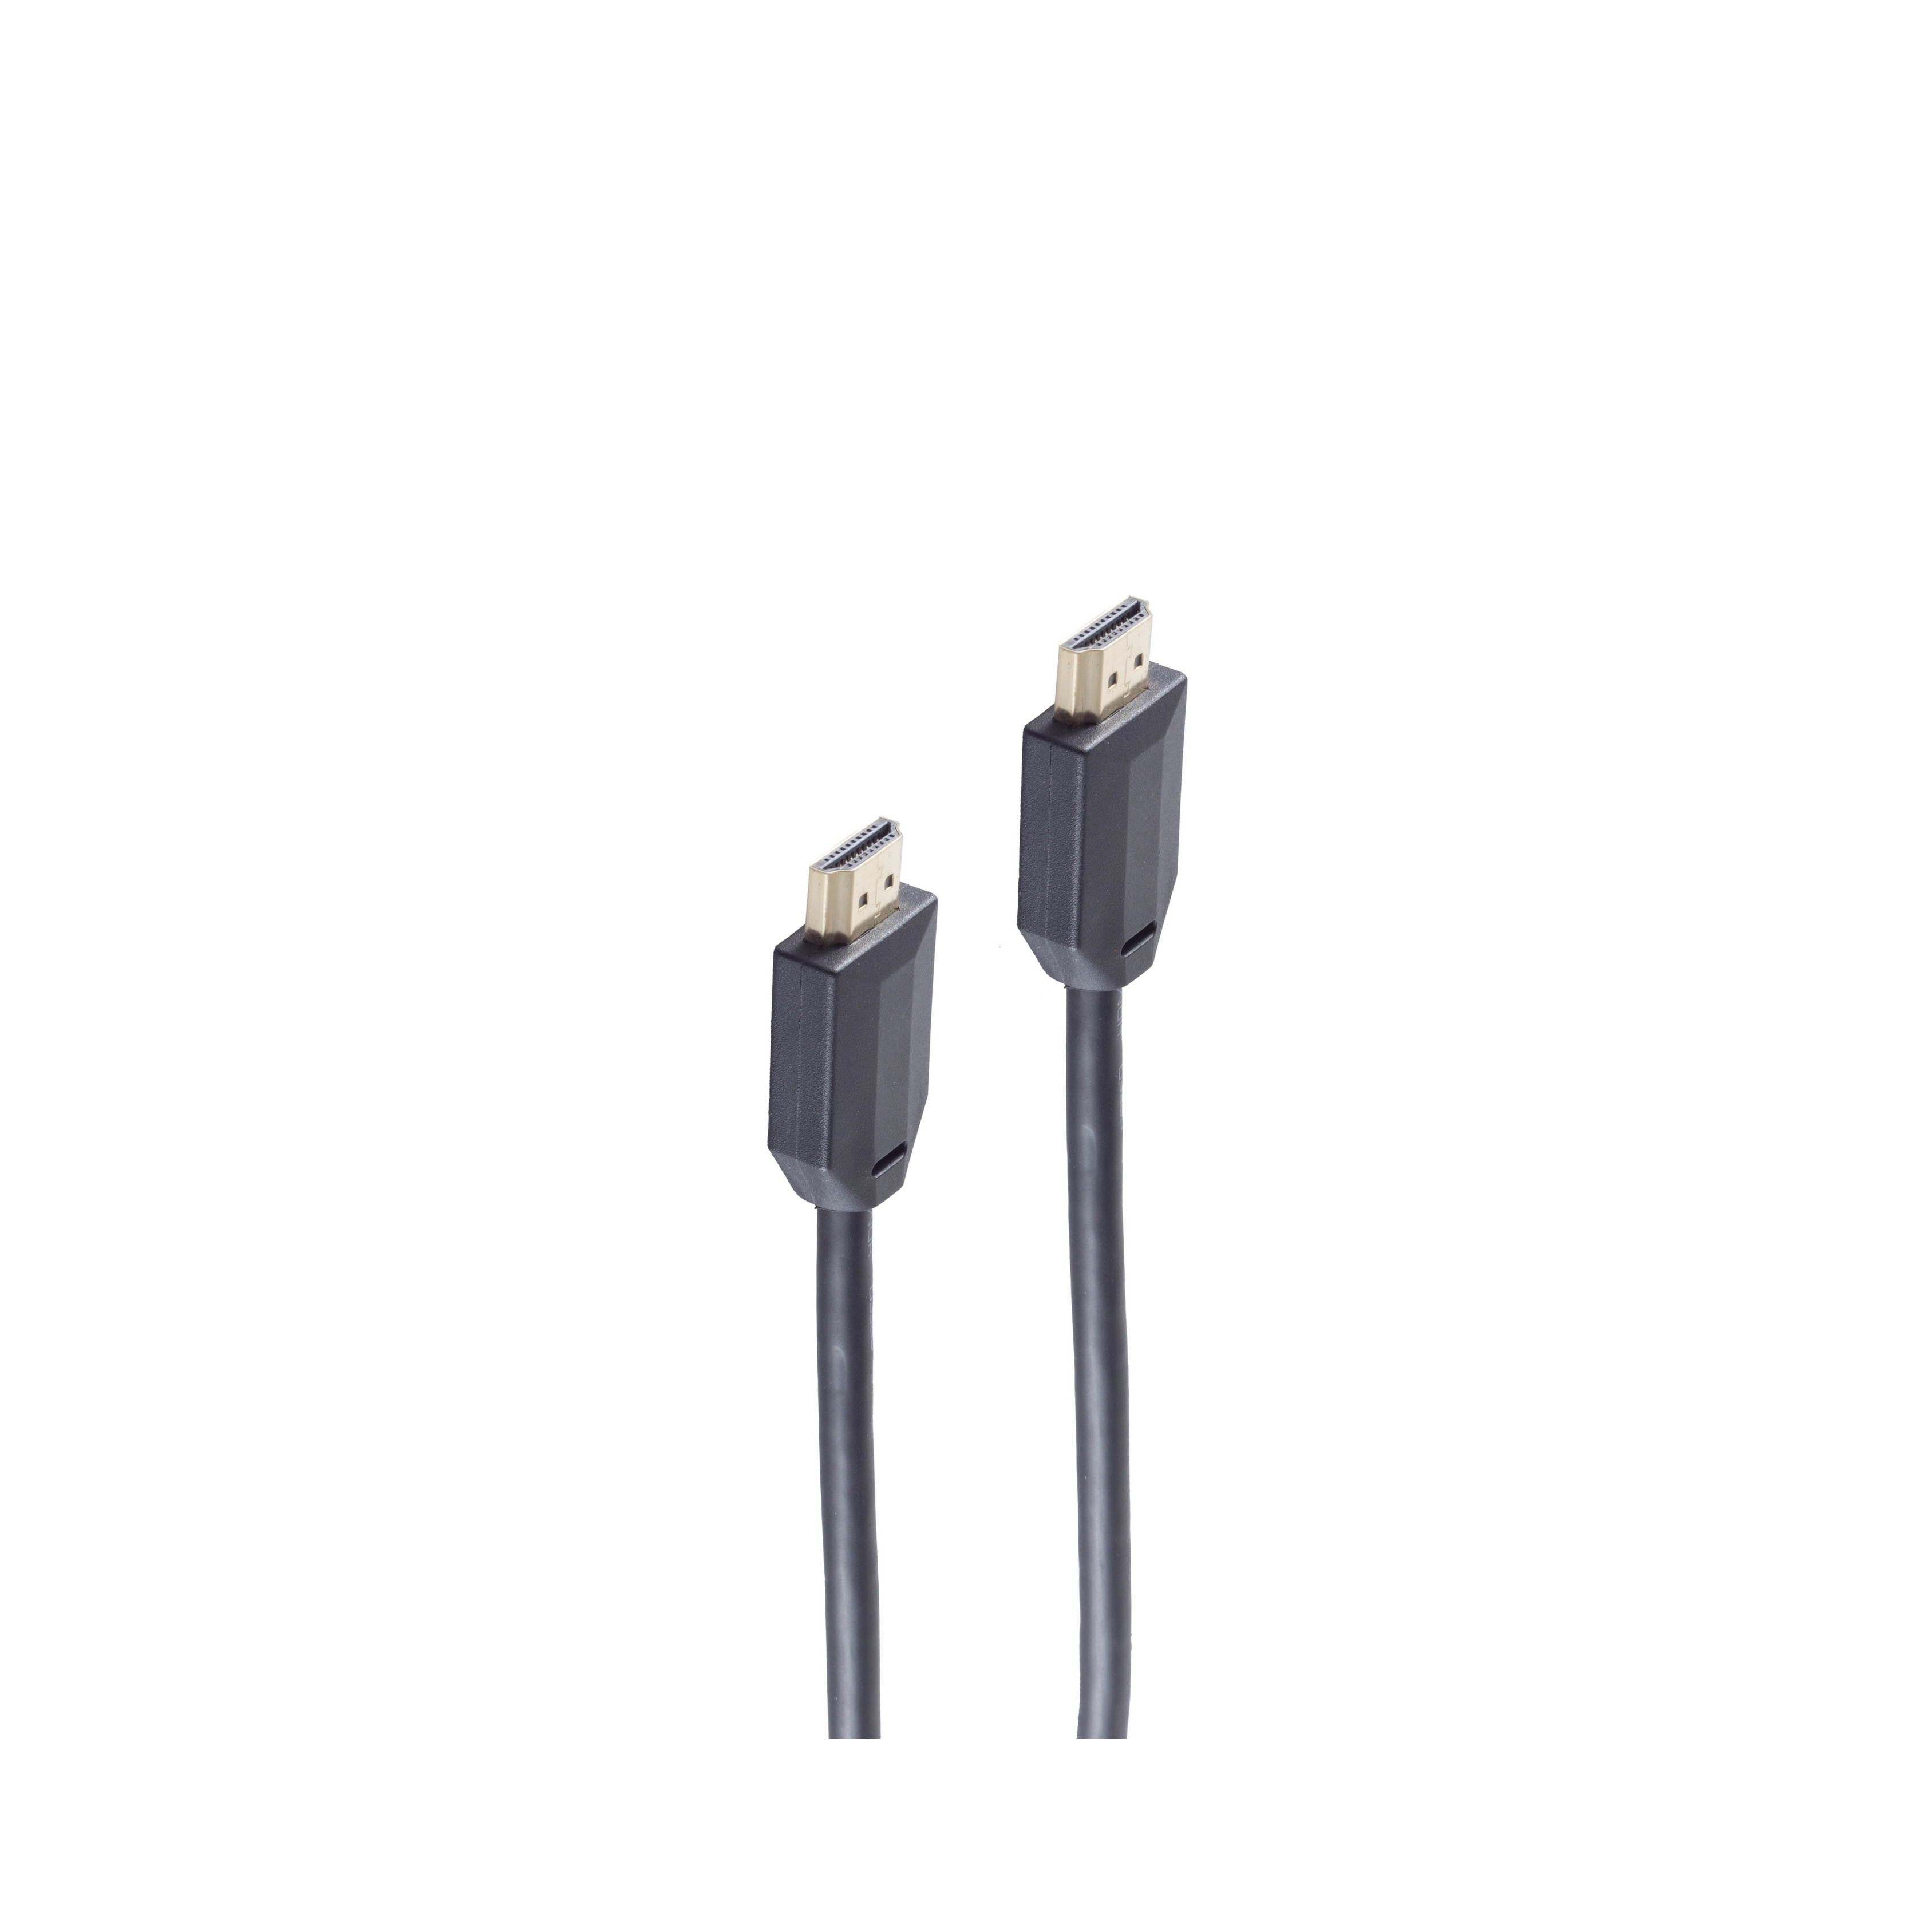 SHIVERPEAKS Ultra HDMI Kabel, 10K, PVC, 2m schwarz, HDMI Kabel